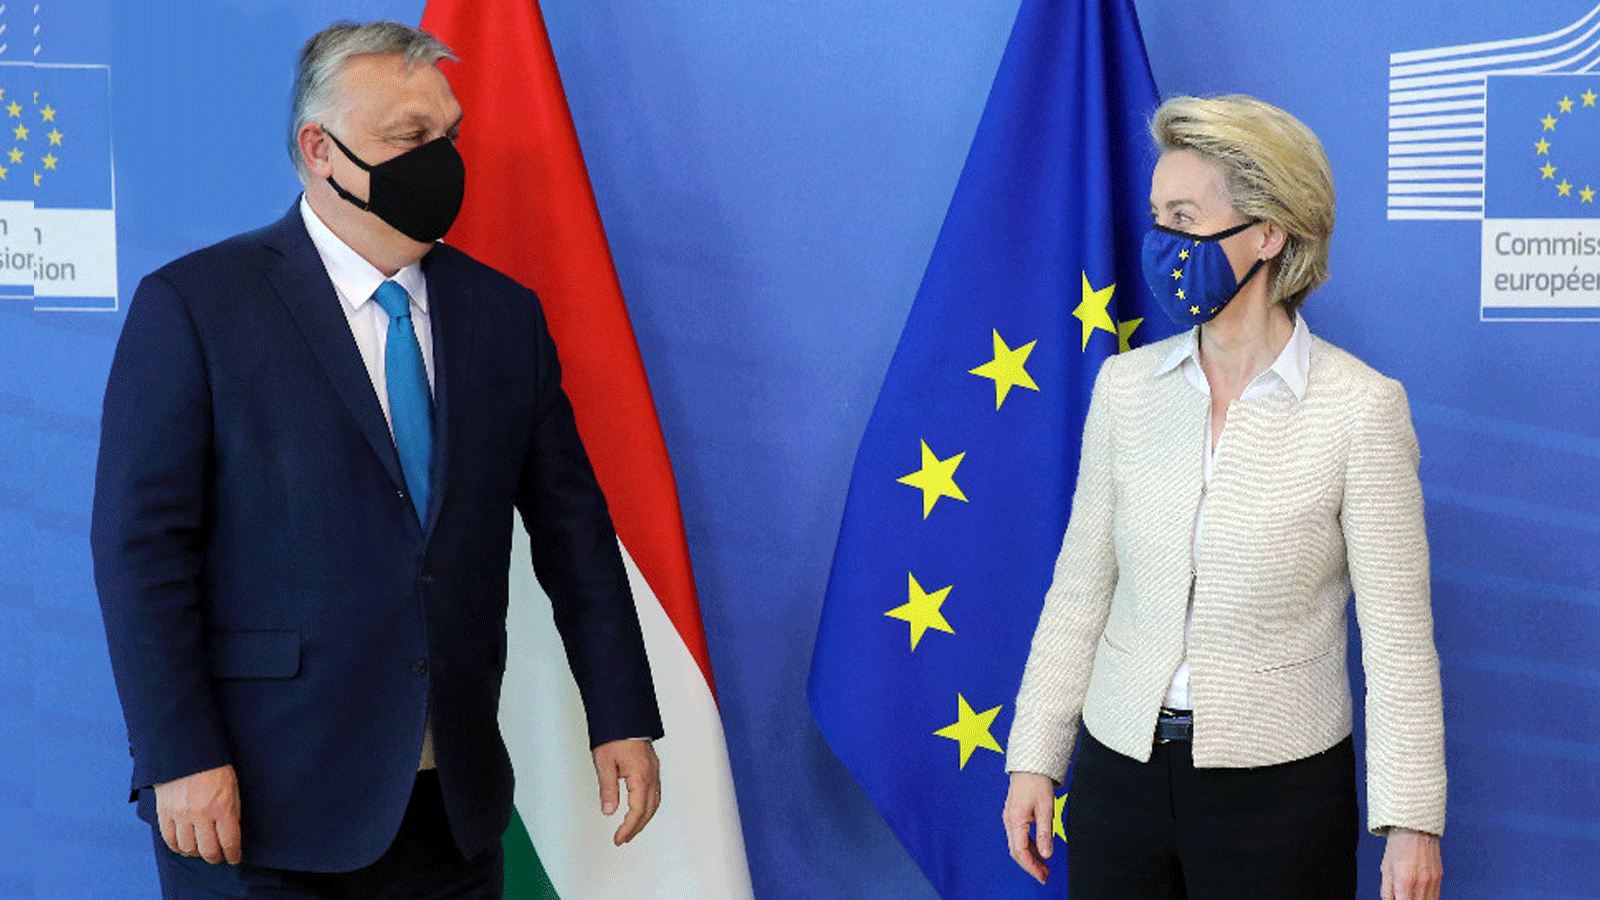 رئيس الوزراء المجري فيكتور أوربان يجتمع مع رئيسة الاتحاد الأوروبي أورسولا فون دير لاين لحضور قمة 2021 في بروكسل.